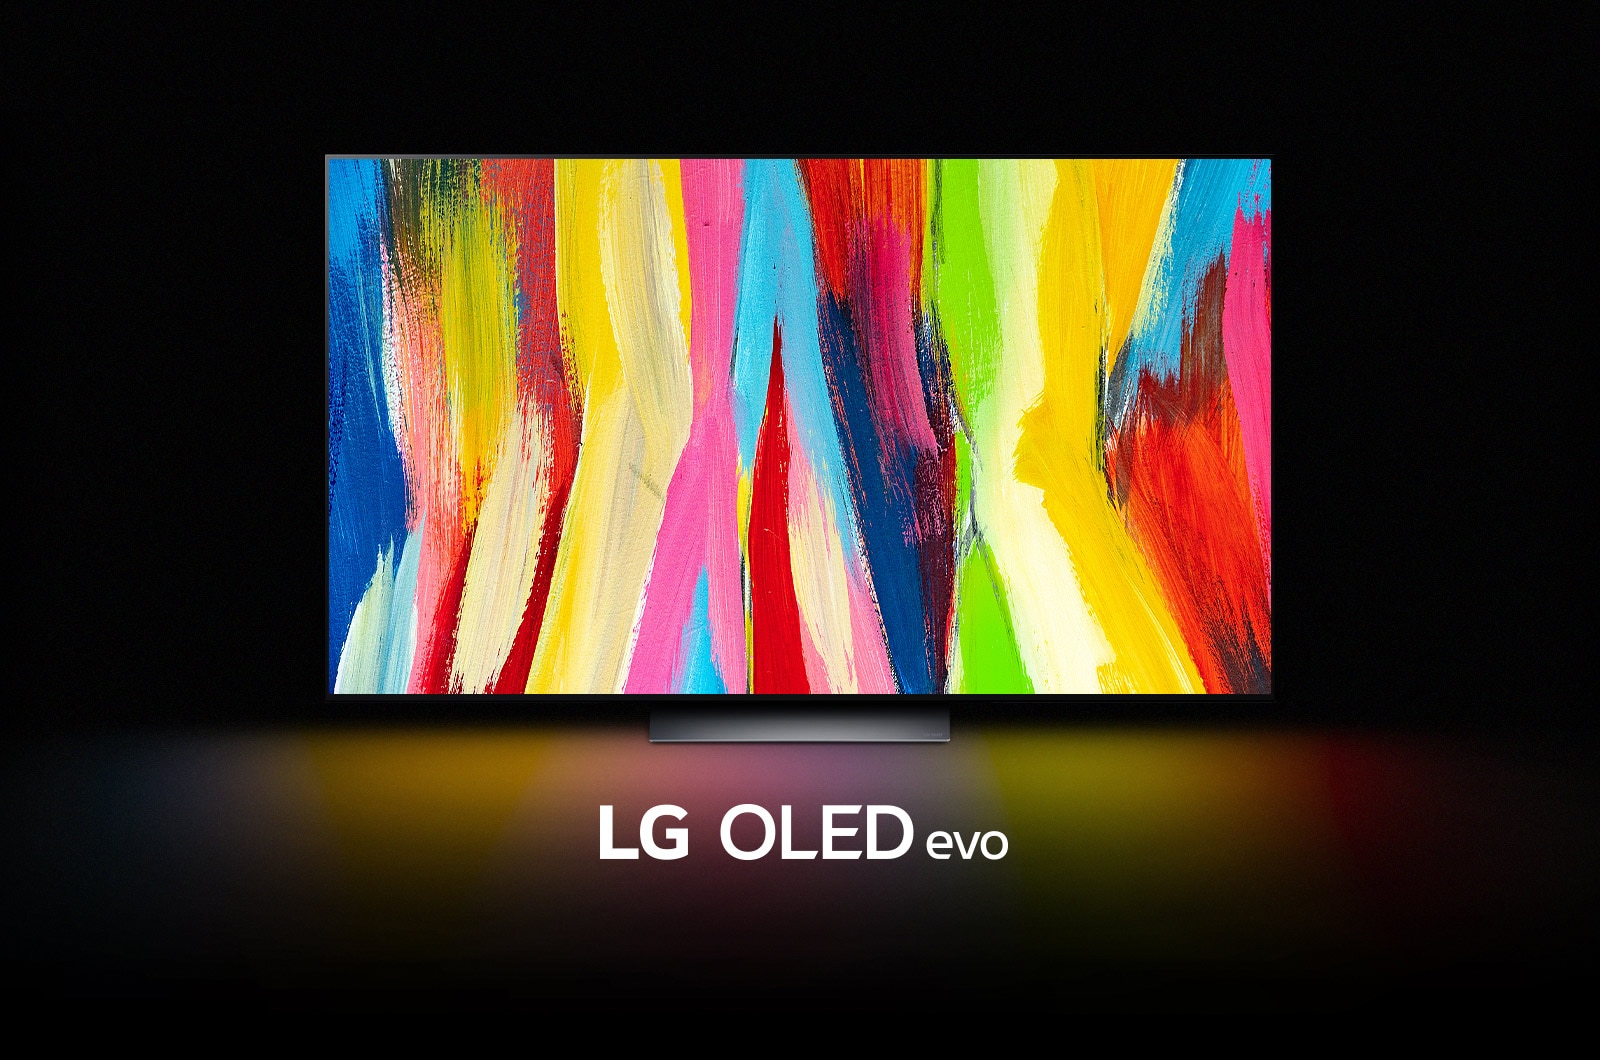 Un LG OLED C2 está en una habitación oscura con una colorida obra de arte abstracta de líneas verticales en la pantalla y las palabras "LG OLED evo" debajo.